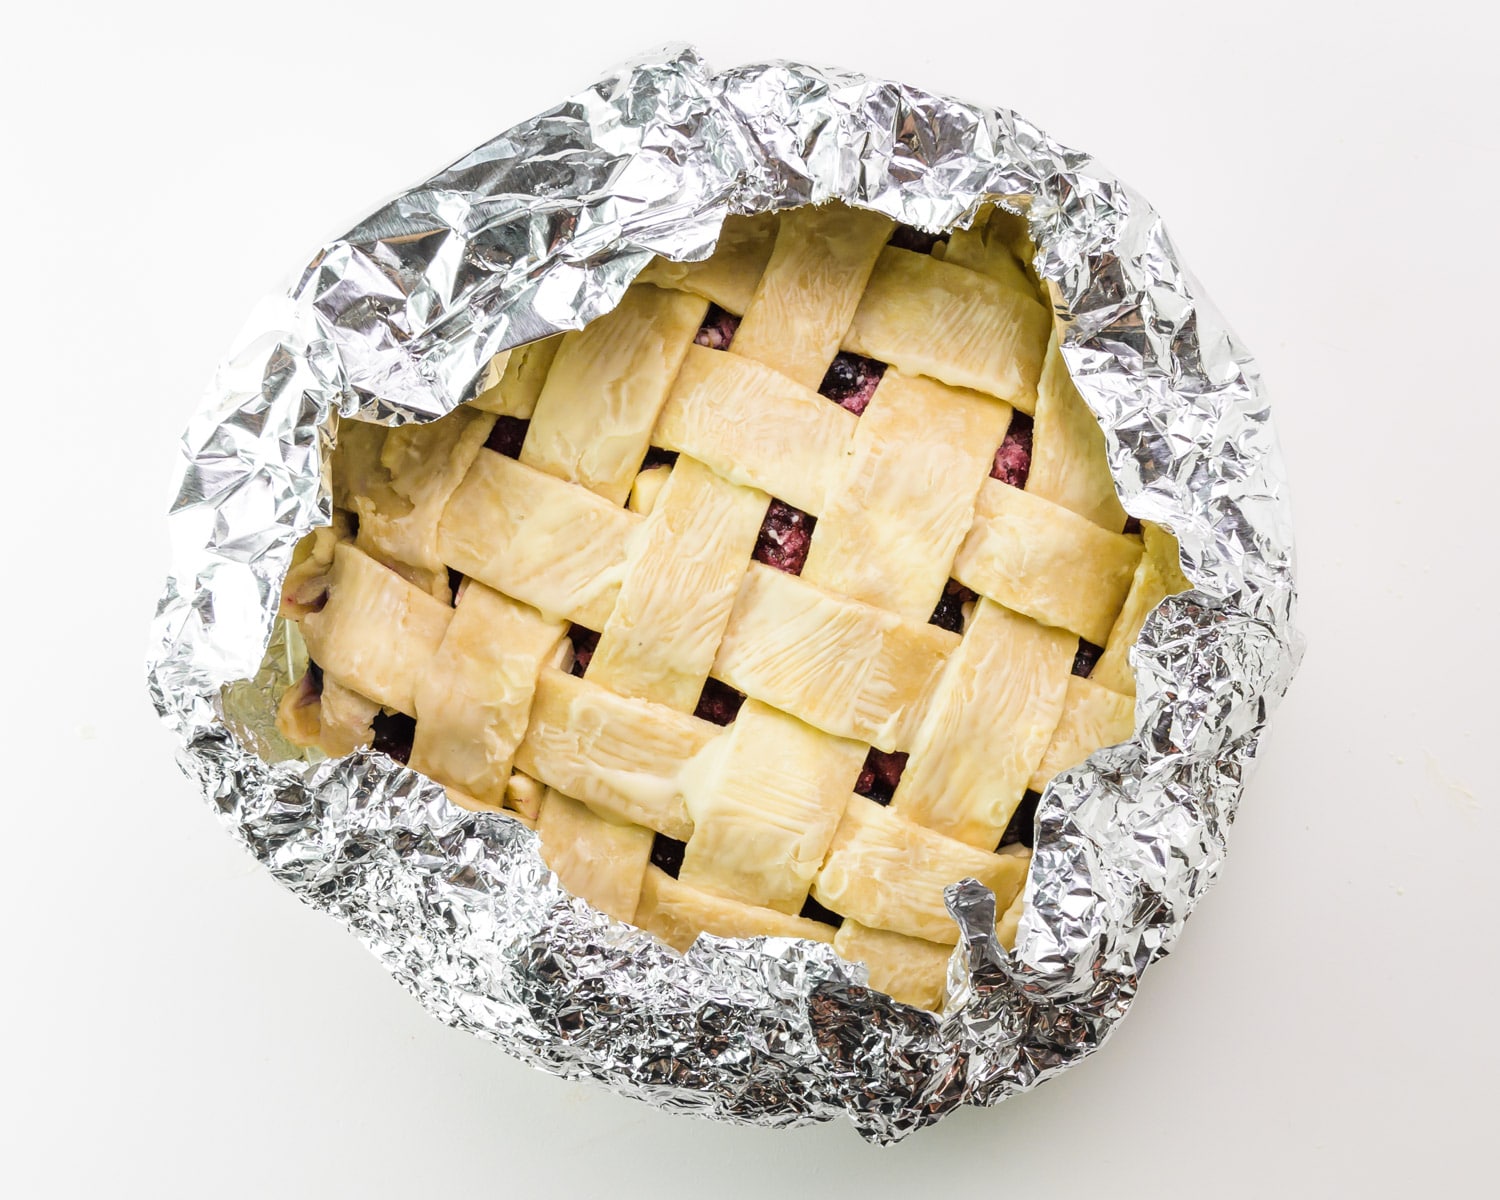 A lattice pie has an aluminum tent around the edges.